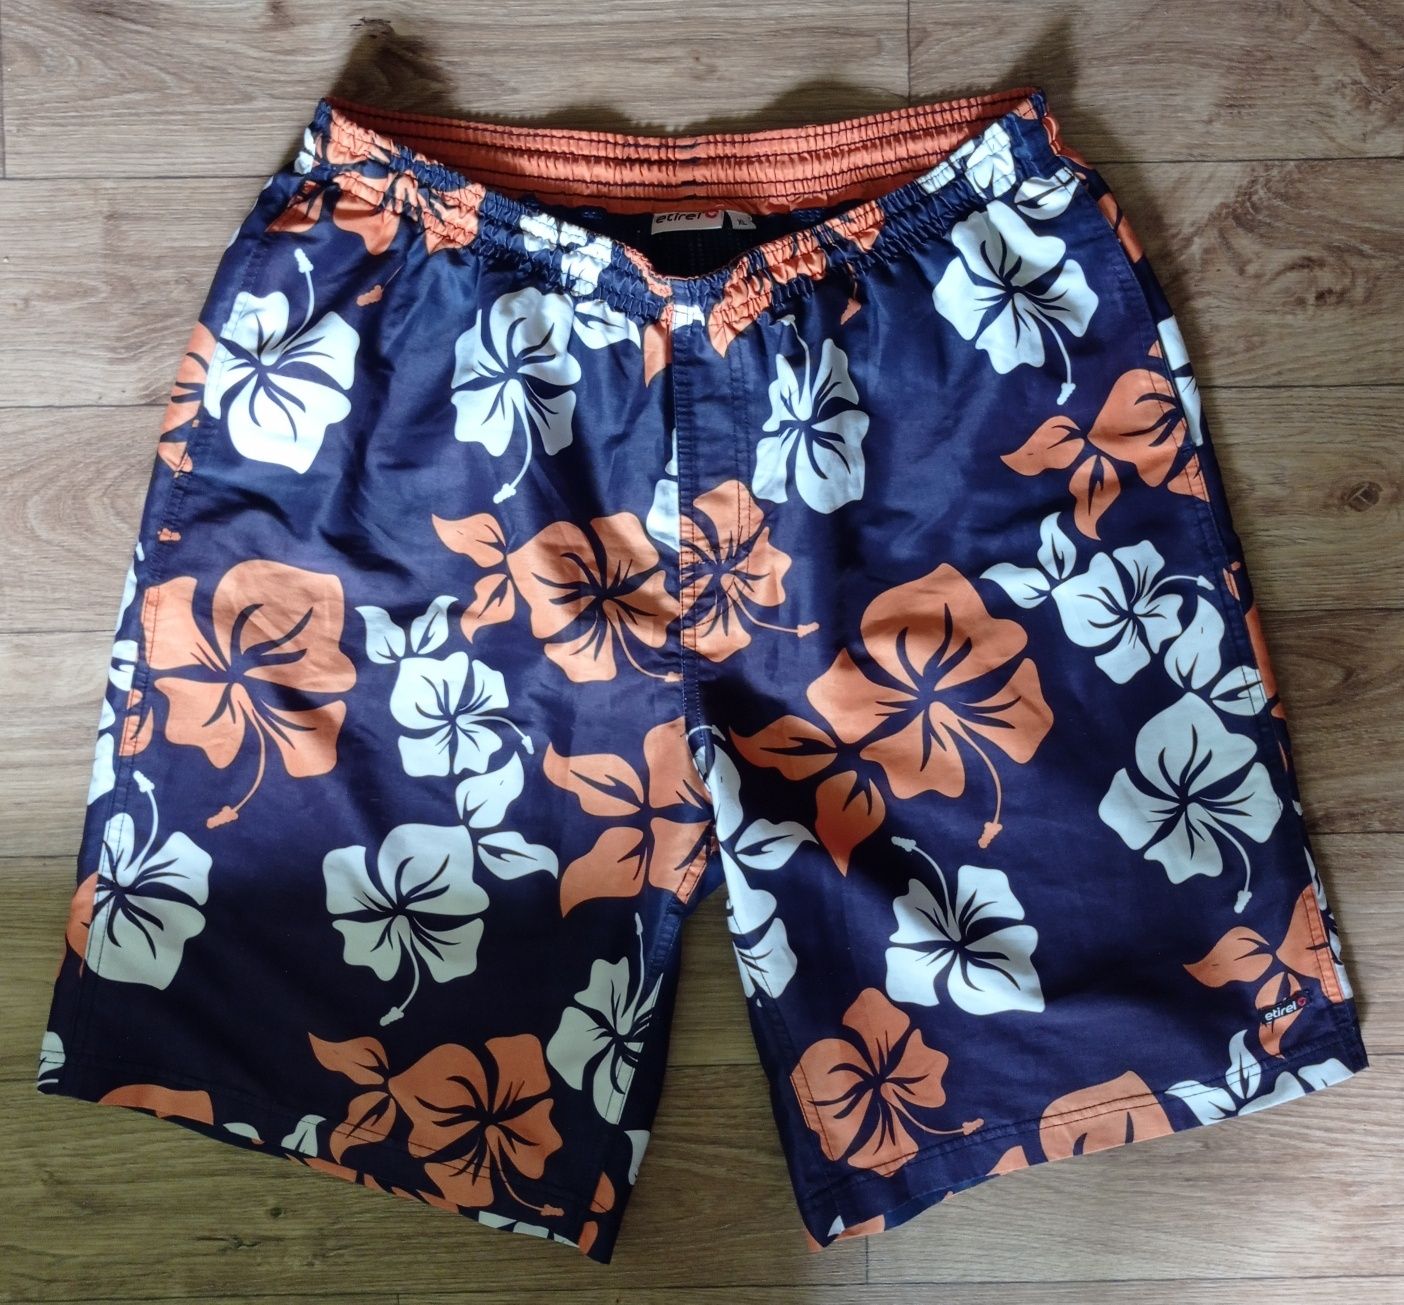 Мужские спортивные шорты - плавки Etirel,  размер XL 54-56, 56-58